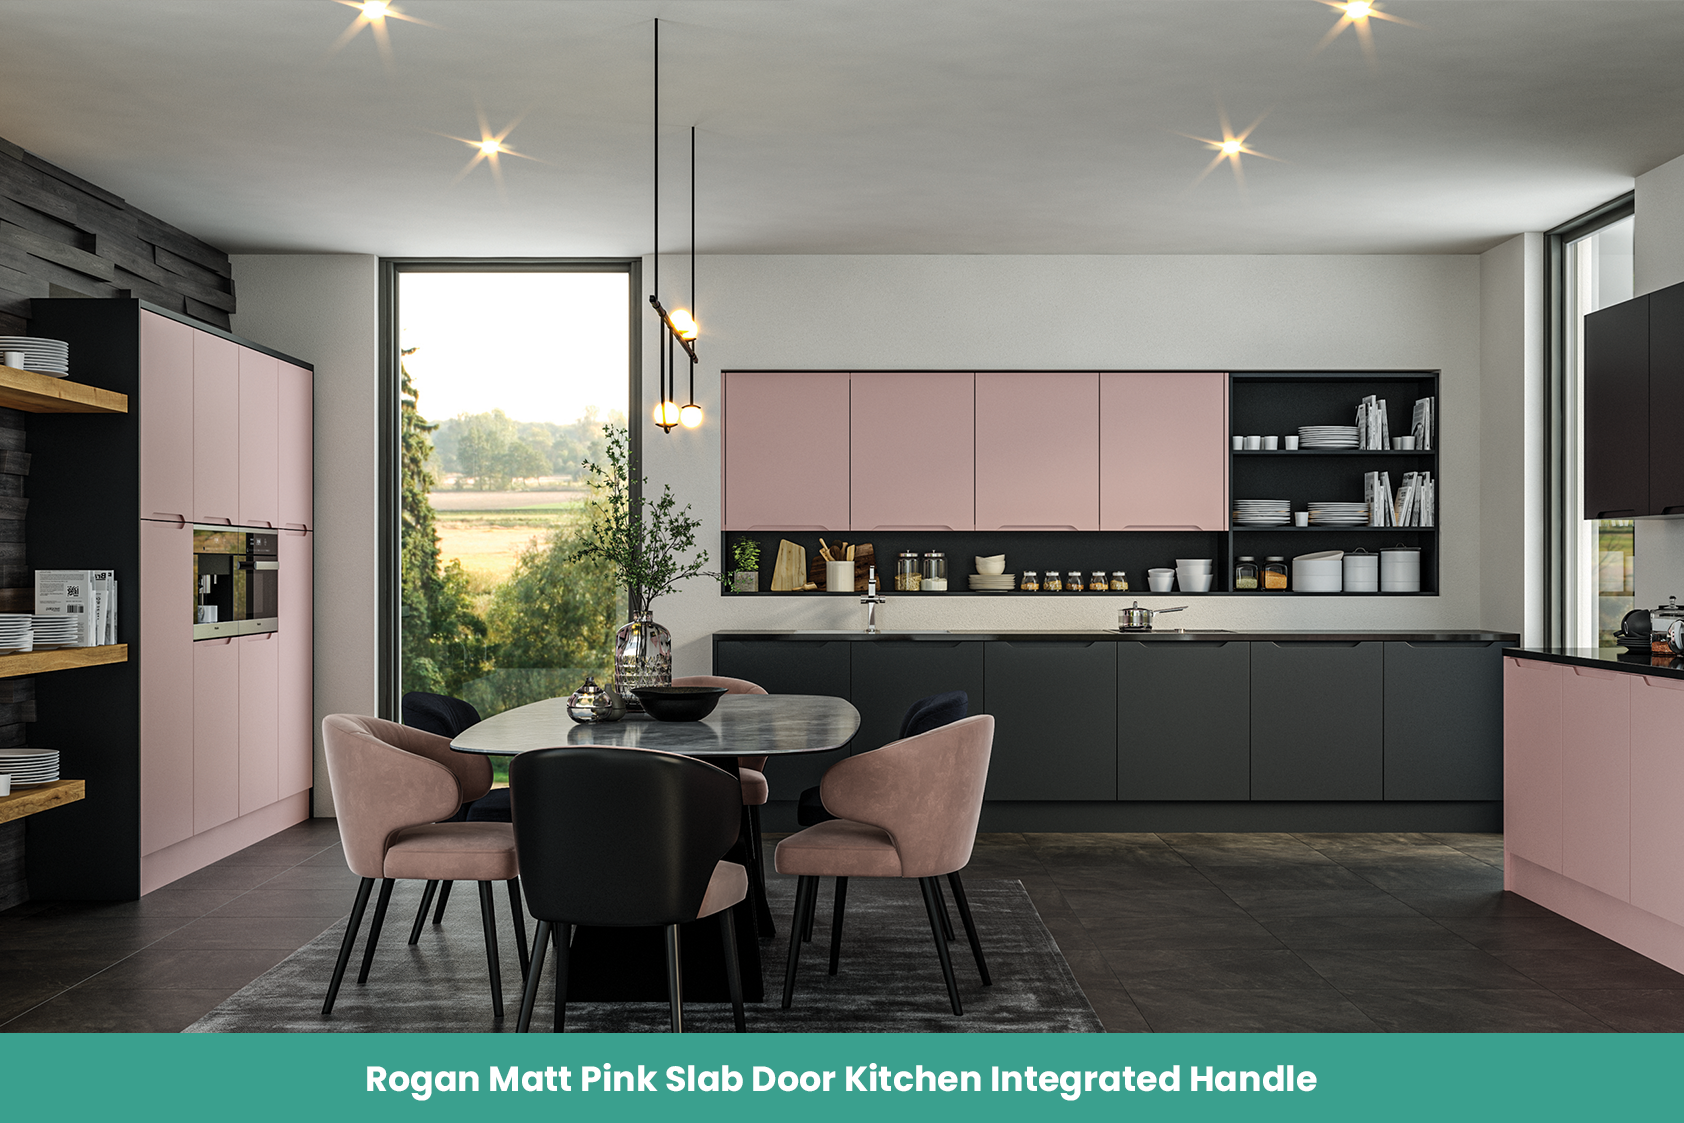 Rogan Matt Pink Slab Door Kitchen Integrated Handle